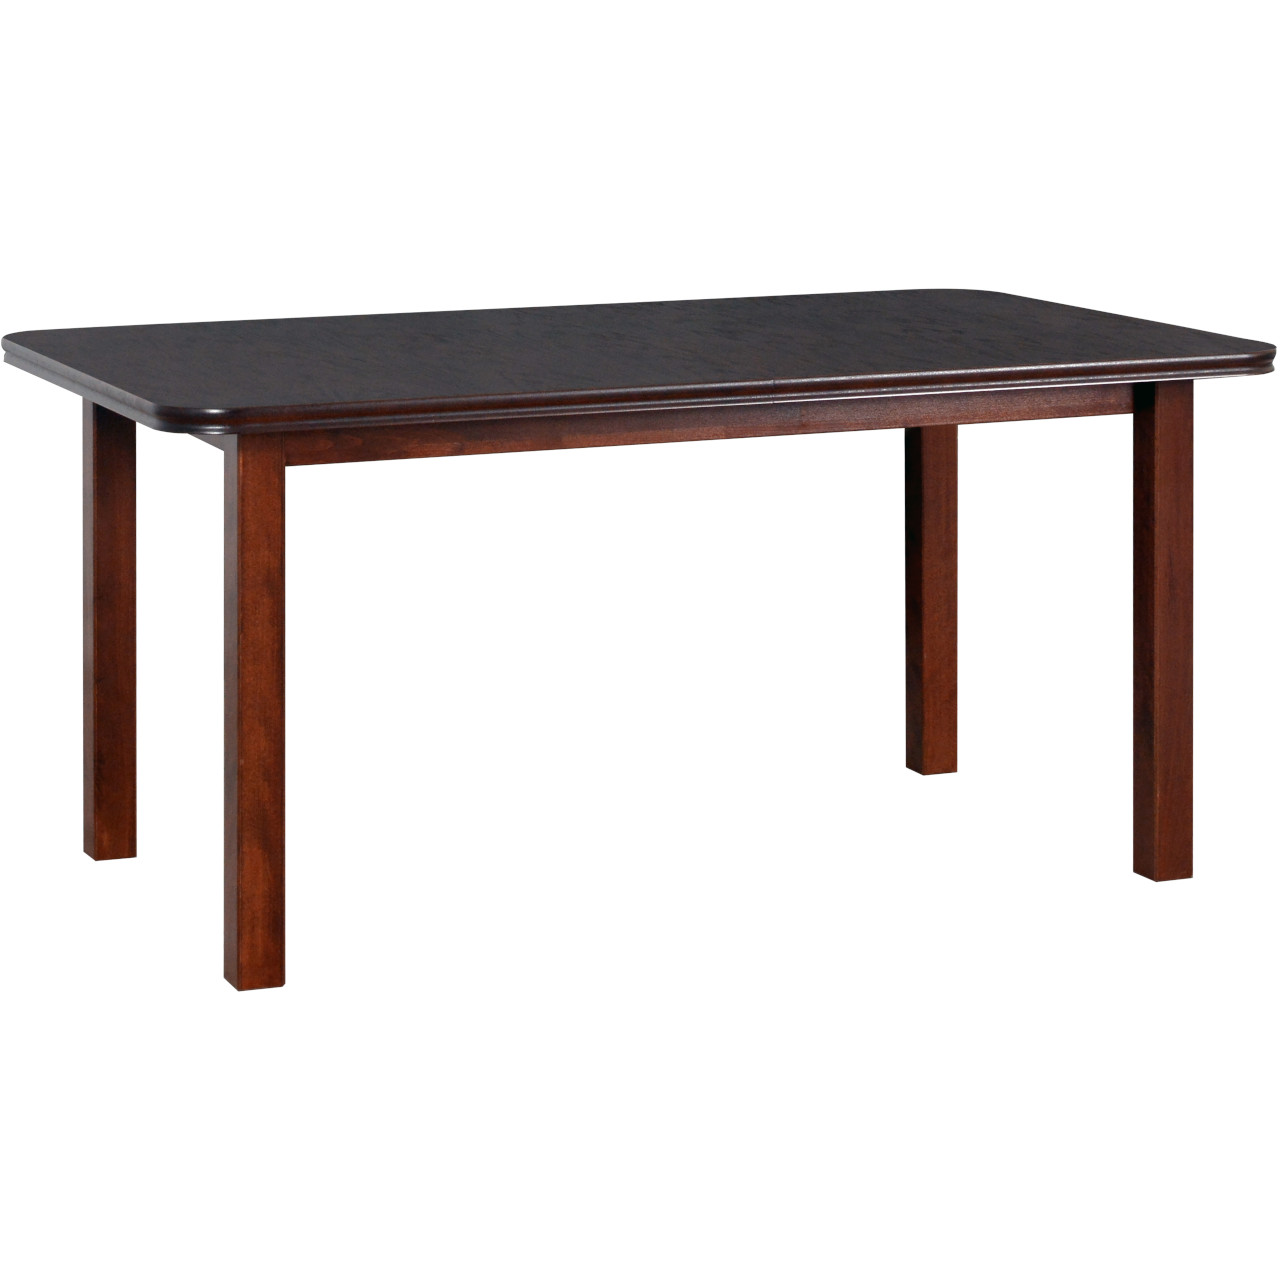 Table WENUS 5 L 90x160/240 walnut oak veneer